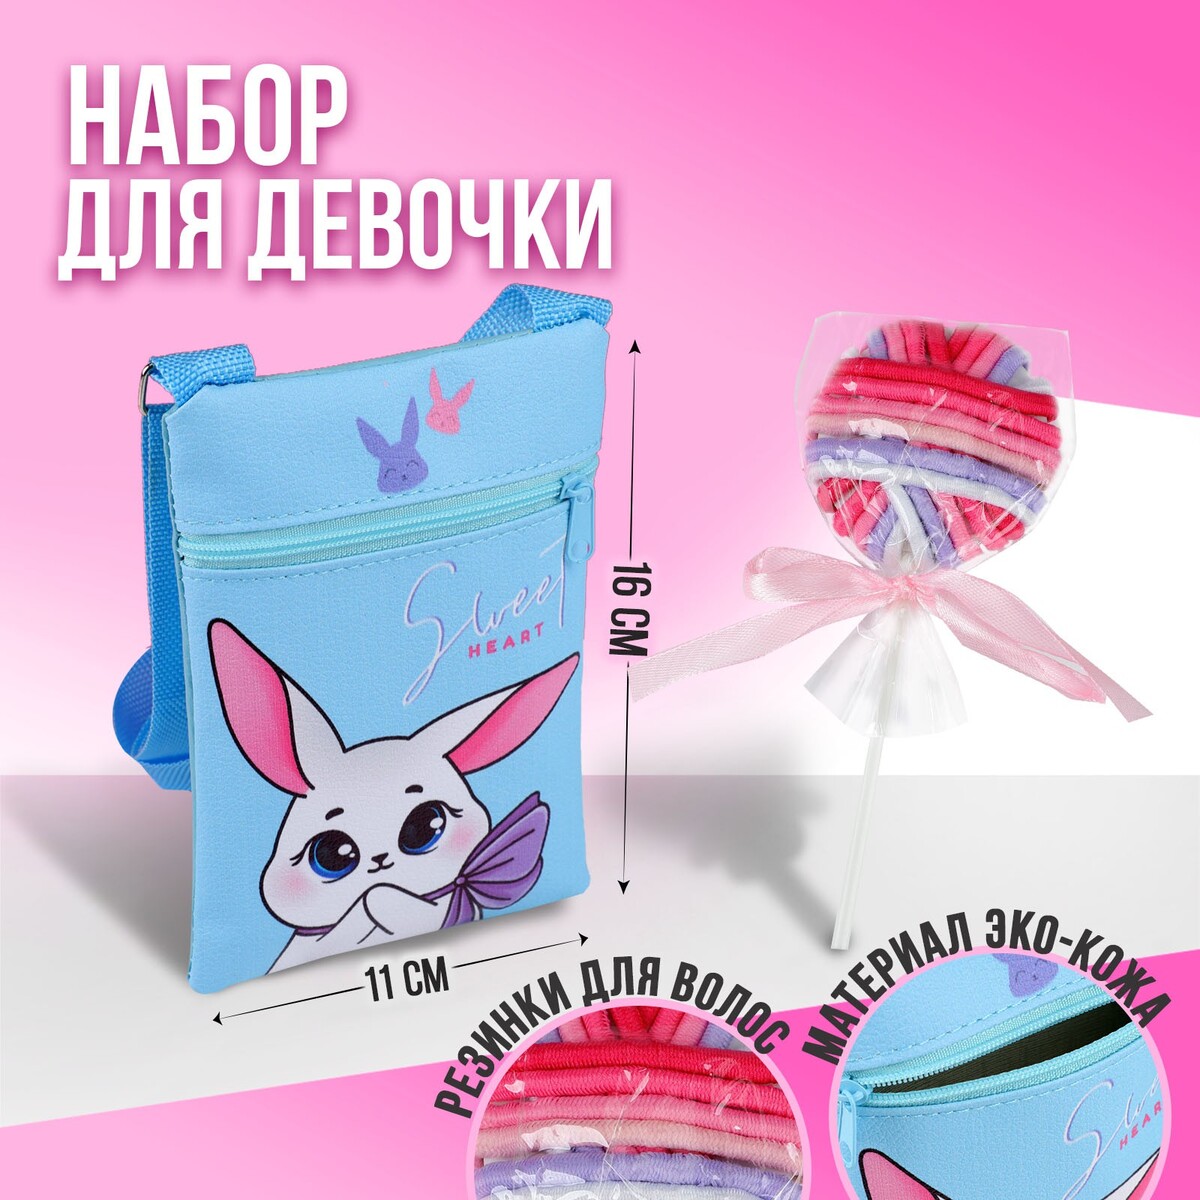 Набор для девочки белый зайчик: сумка и резинки для волос, цвет голубой/розовый joyarty сумка авоська нежные объятия девочки с кошечкой 46x65x7 см